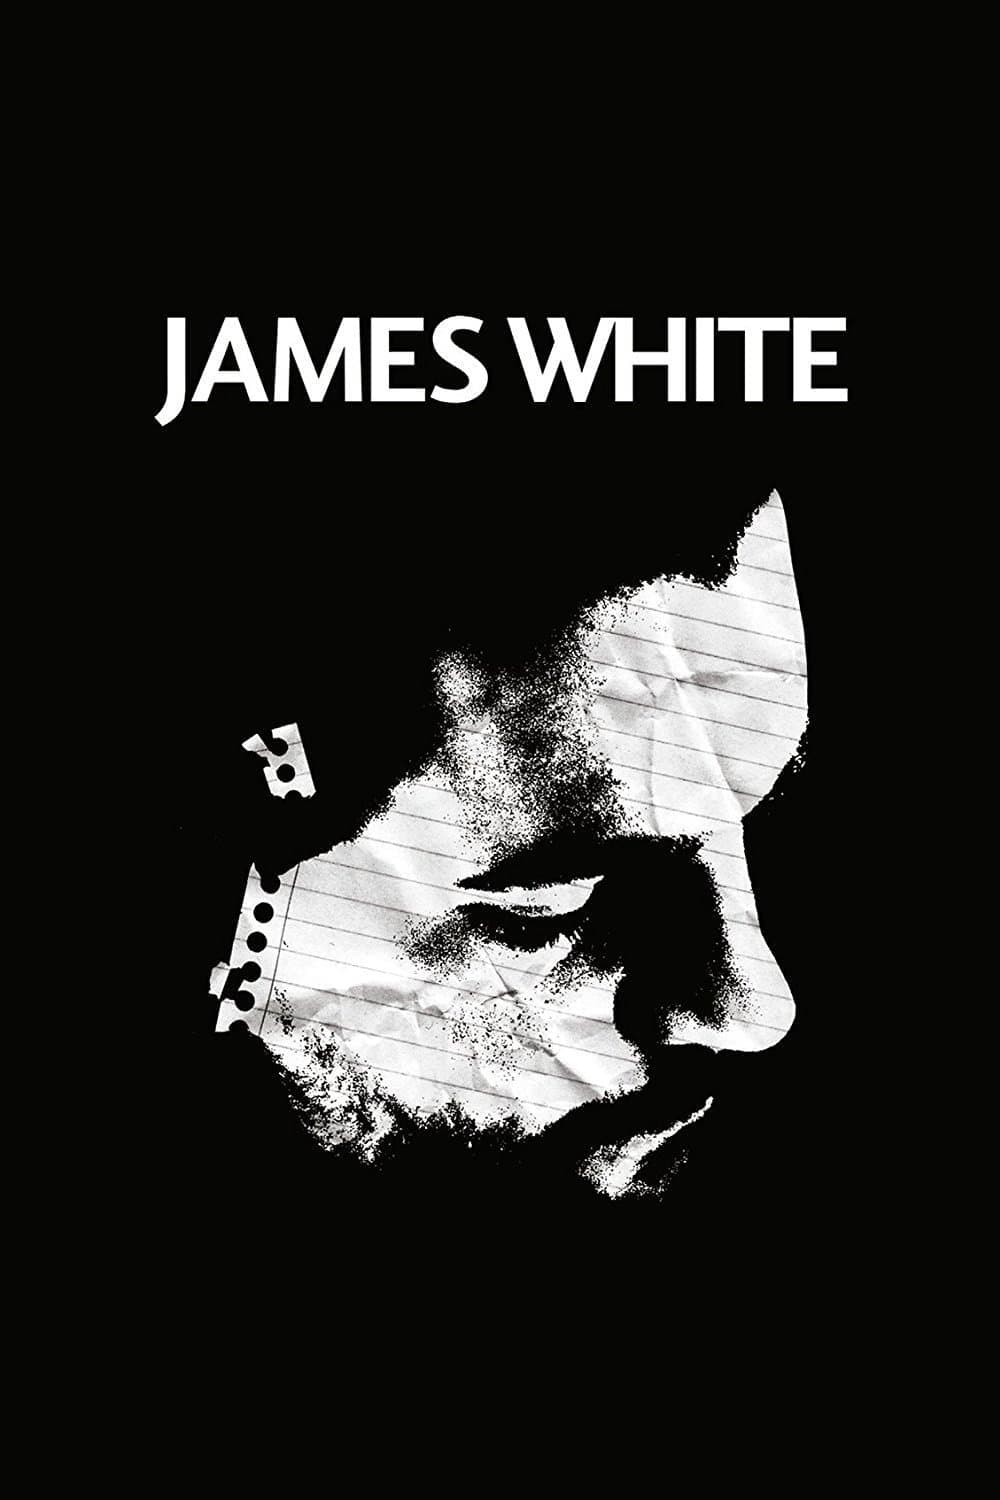 James White (2015)